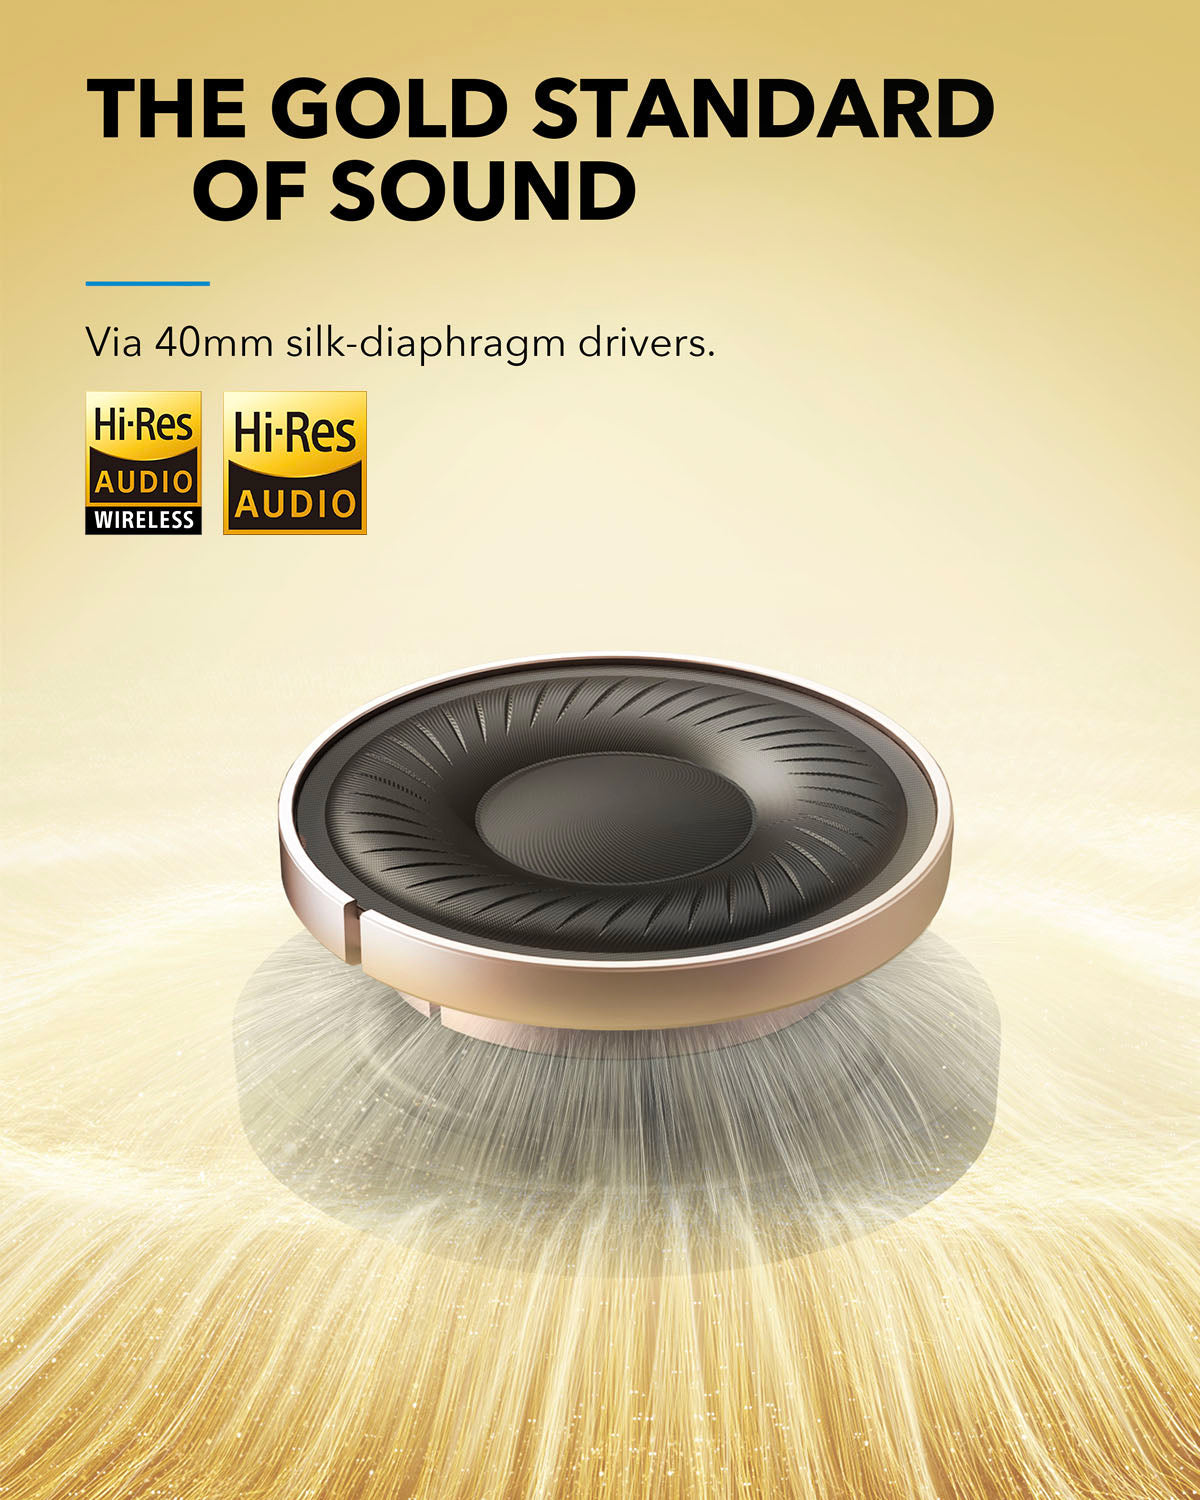 Soundcore Life Q35 – Casque ANC abordable avec Hi-Res Audio en test